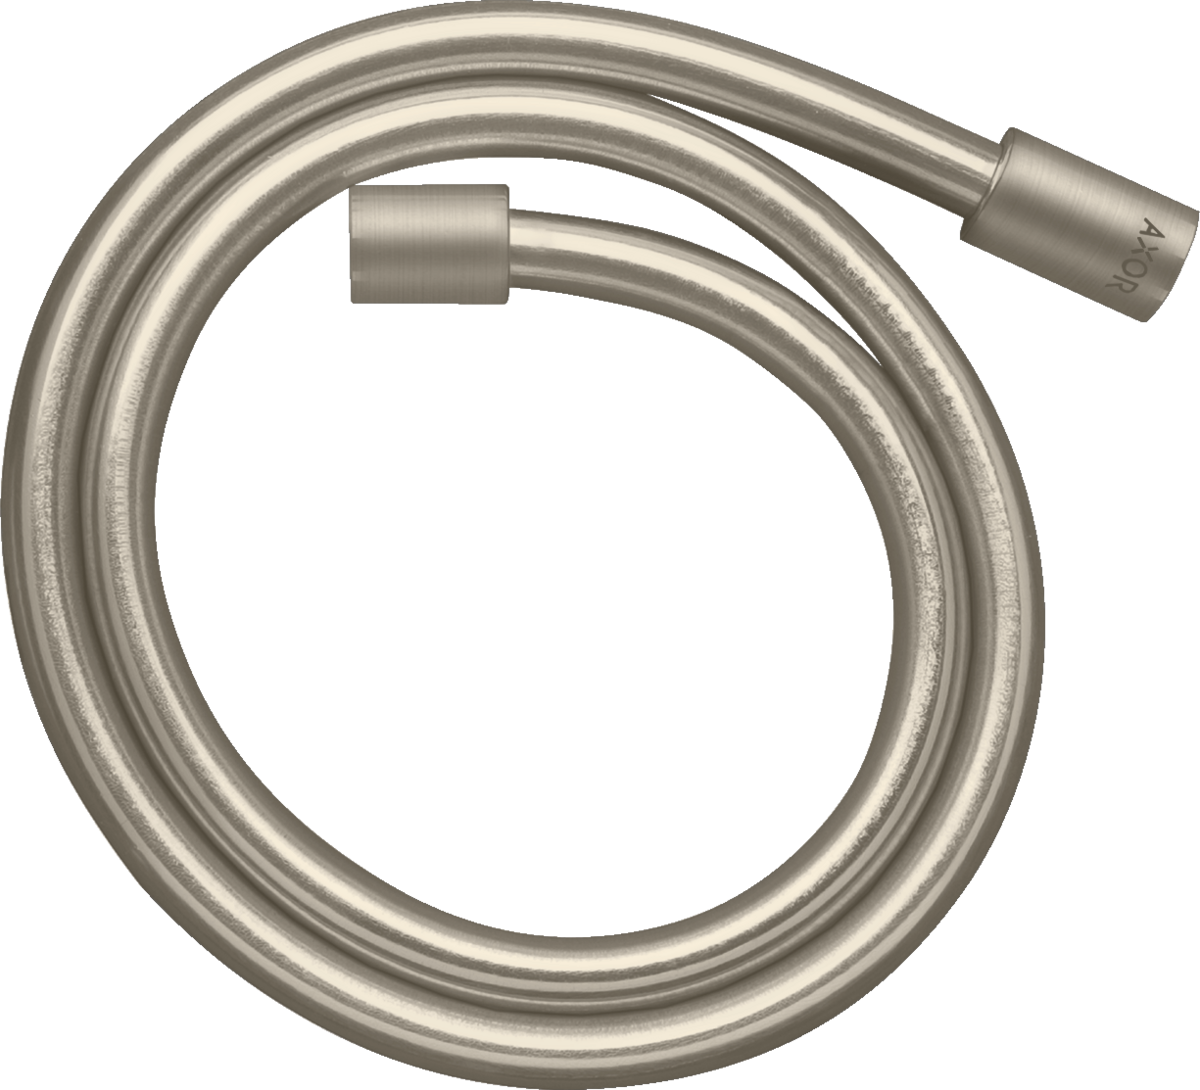 εικόνα του HANSGROHE AXOR Starck Metal effect shower hose 1.25 m with cylindrical nuts #28282820 - Brushed Nickel